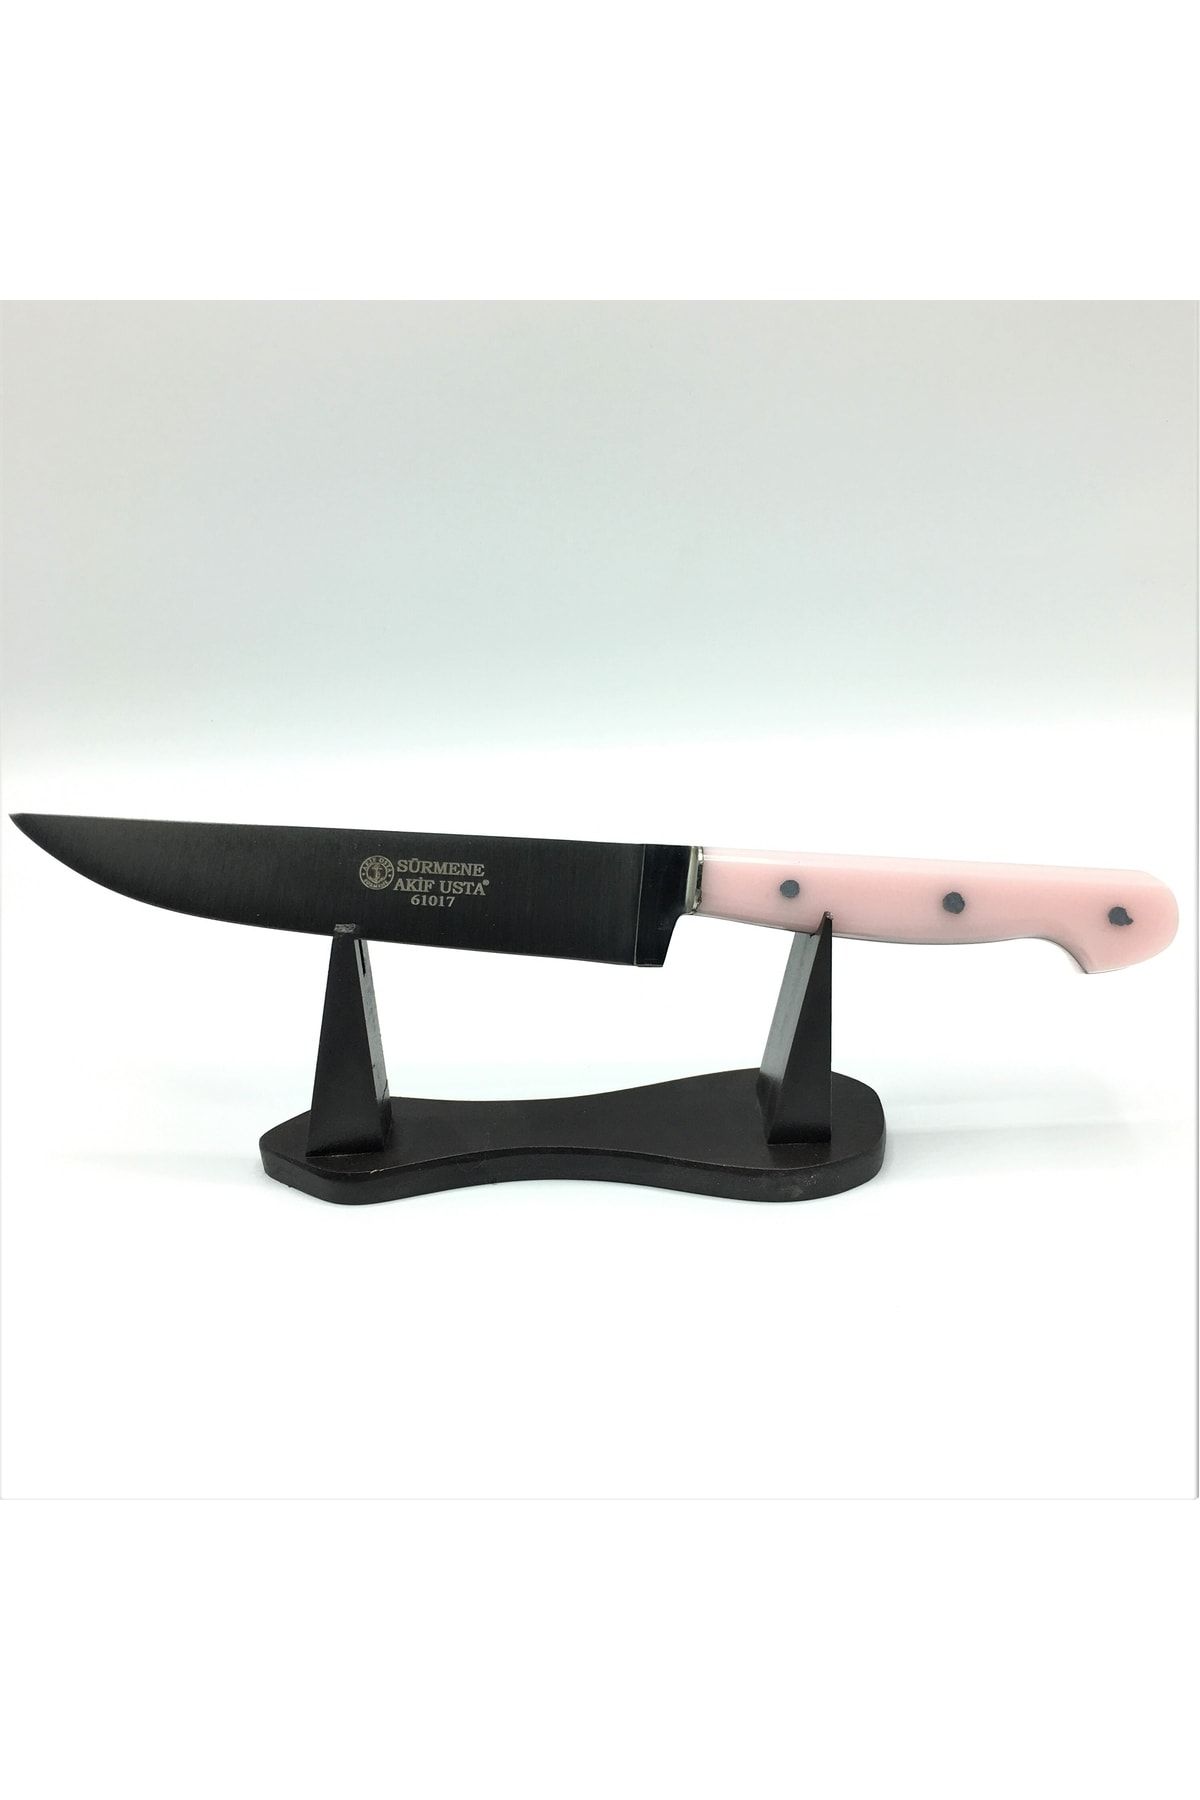 Akif Usta Bıçakçılık 17 Cm Açık Pembe Renkli Pleksi Saplı Et Ve Ekmek Bıçağı